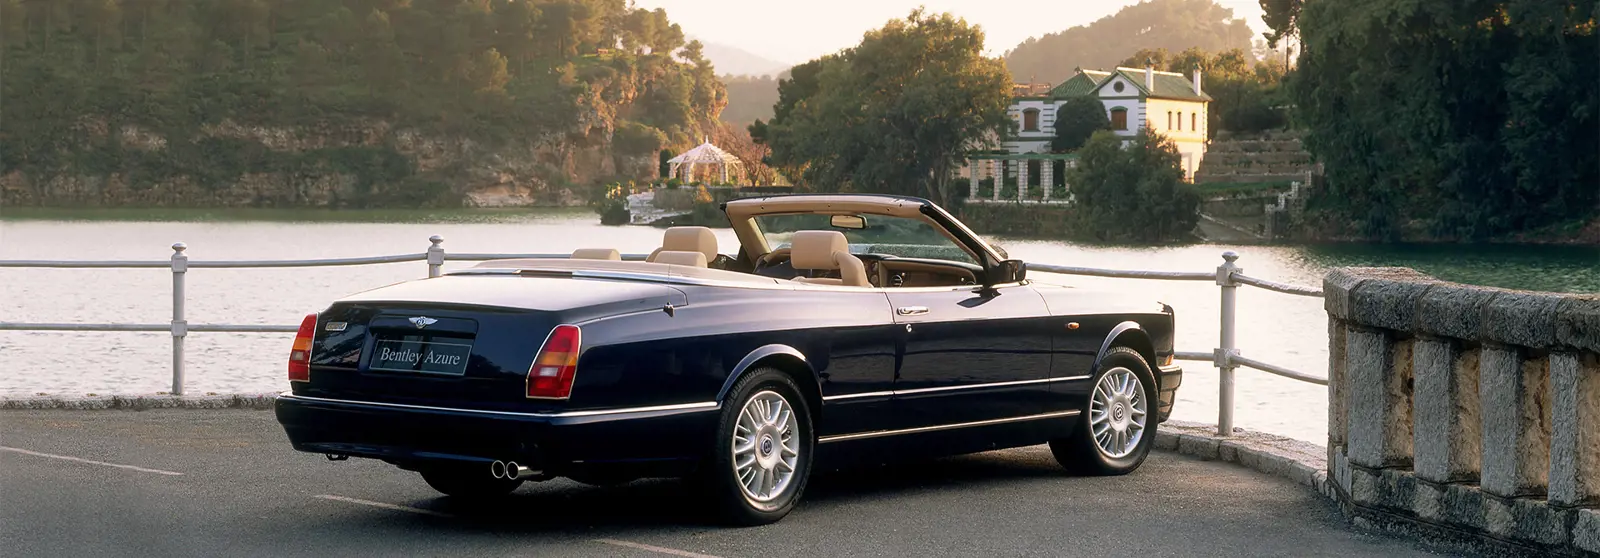 The Azure - Bentley Past Models